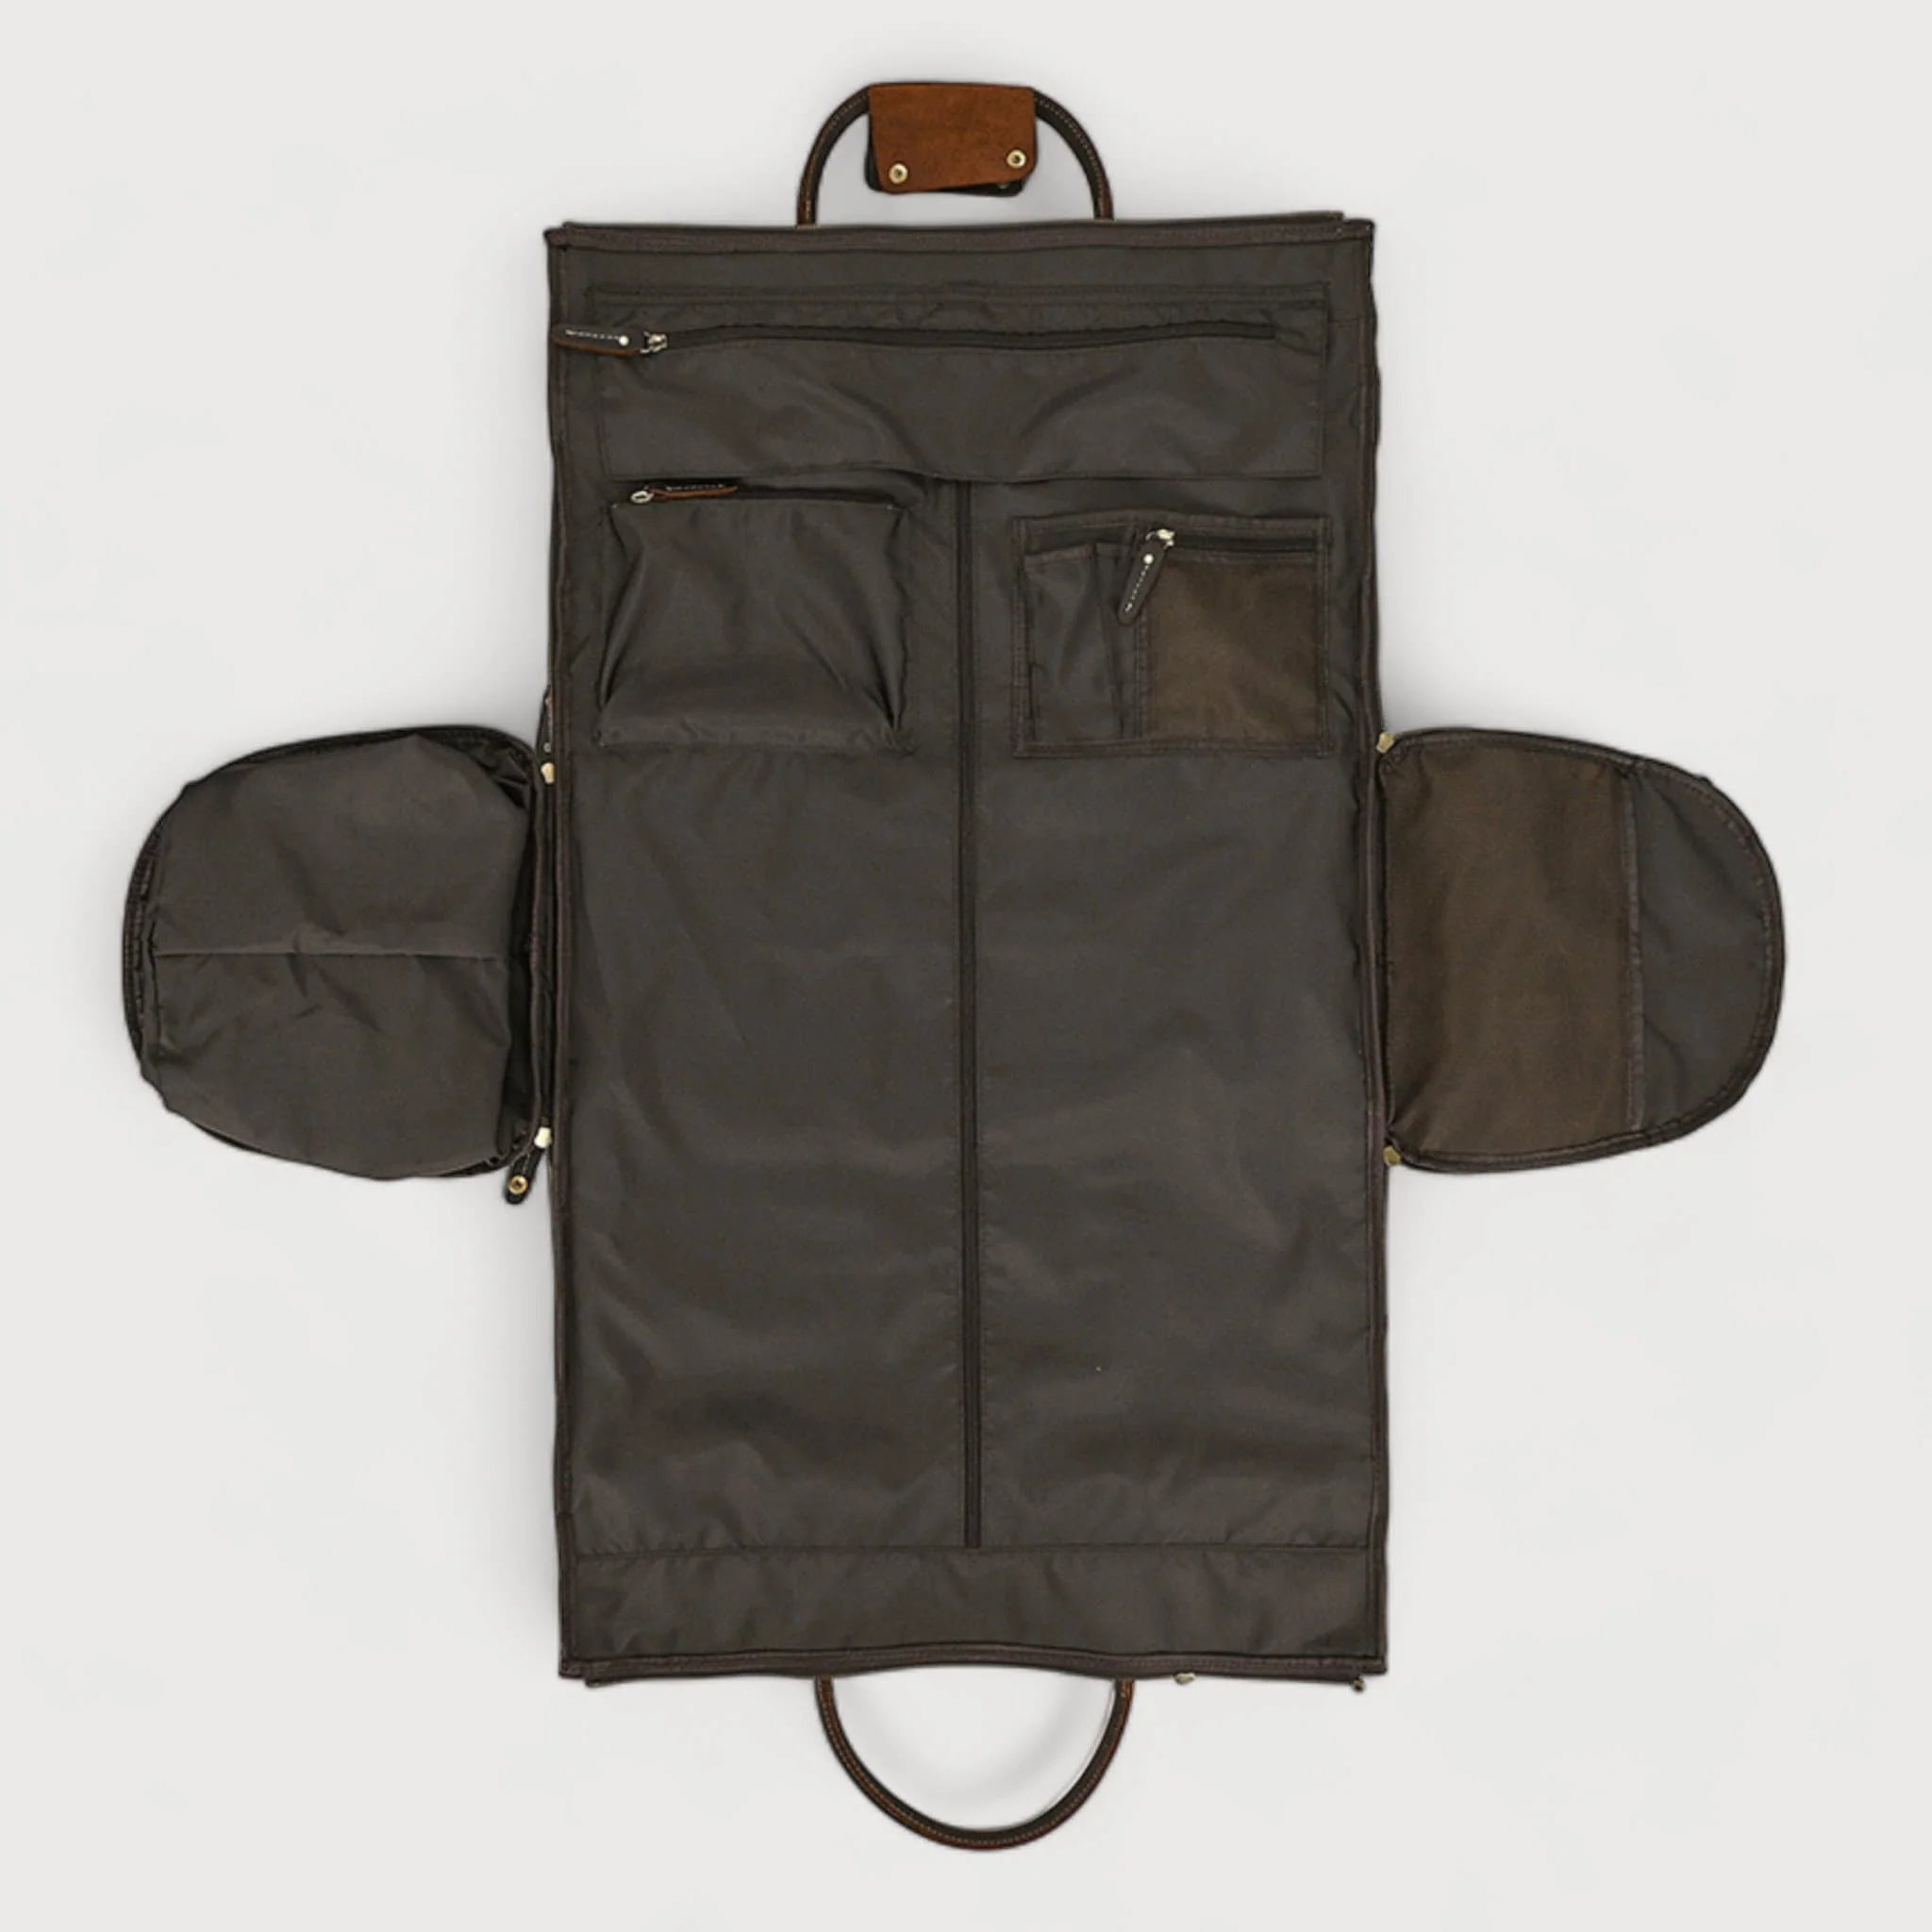 Arcadia - Foldable Clothing Bag